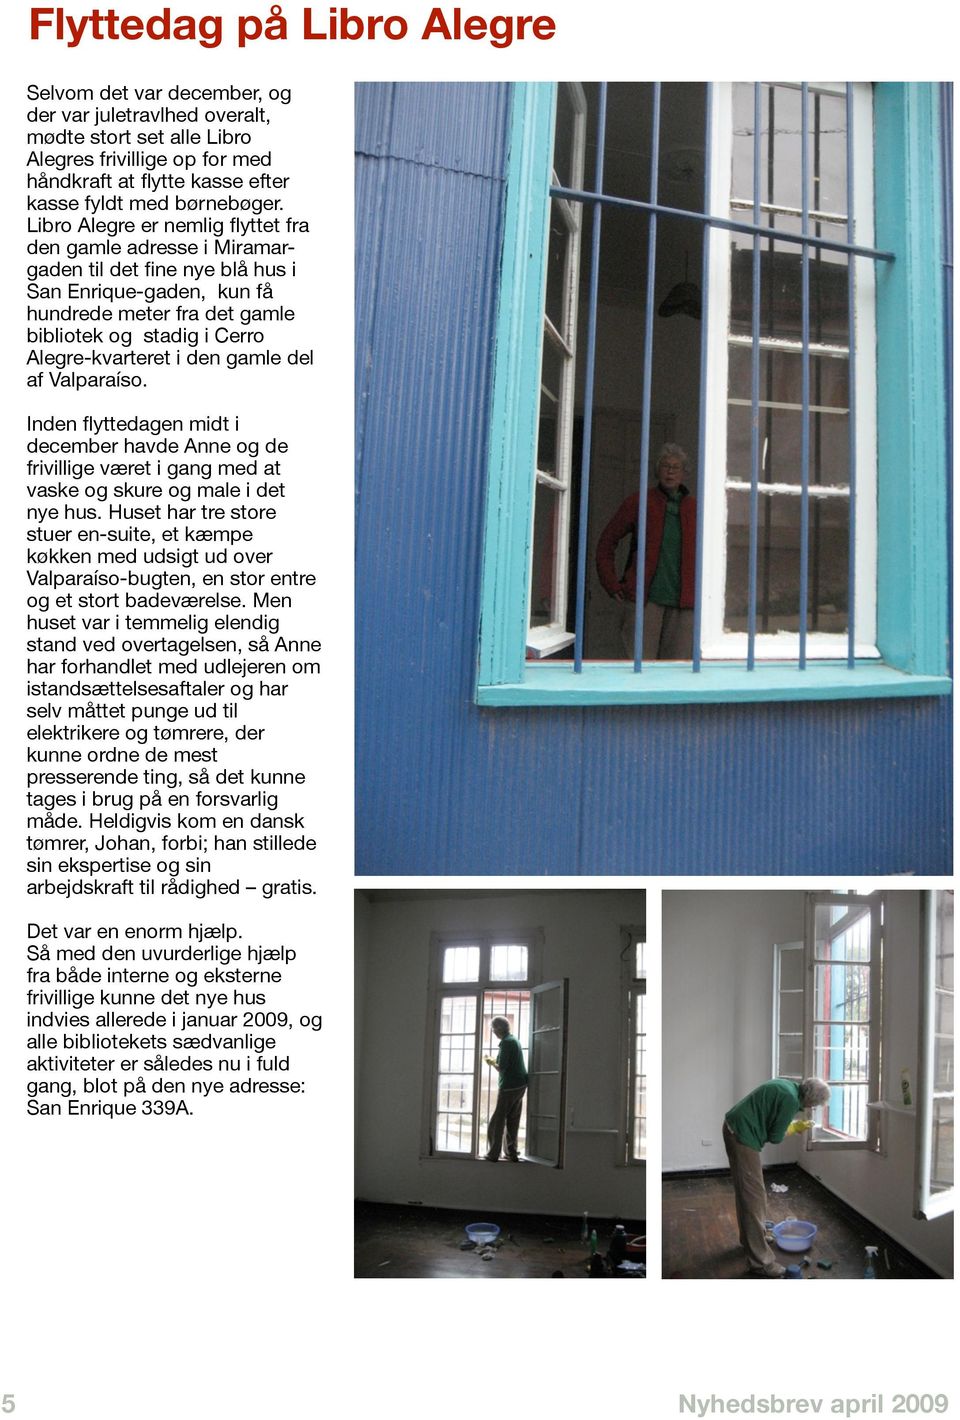 den gamle del af Valparaíso. Inden flyttedagen midt i december havde Anne og de frivillige været i gang med at vaske og skure og male i det nye hus.